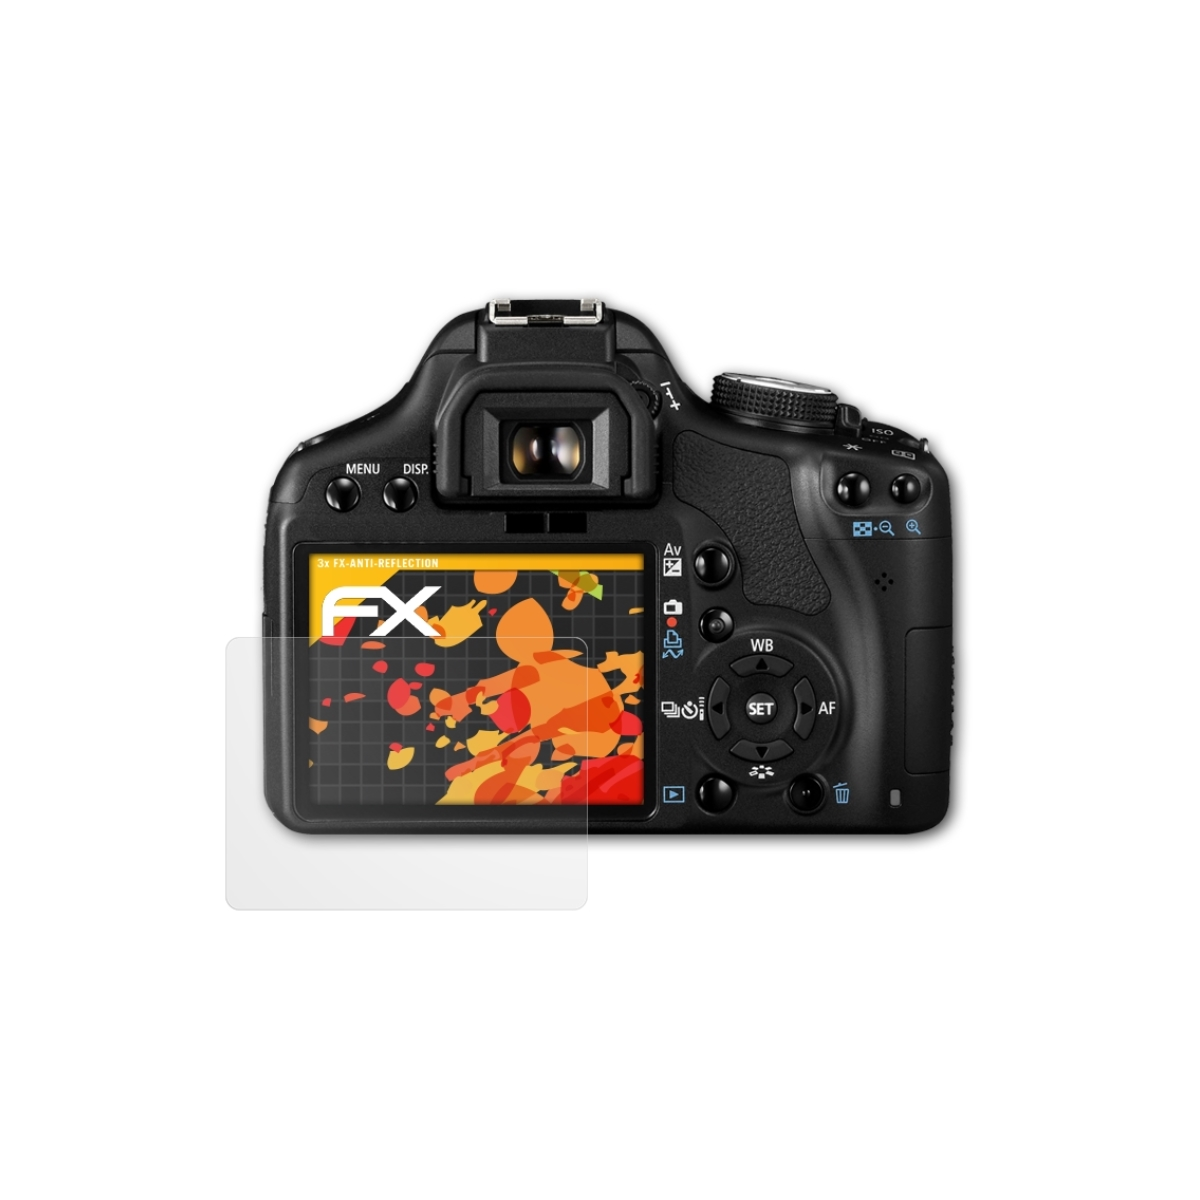 ATFOLIX 3x FX-Antireflex Displayschutz(für EOS 450D) Canon